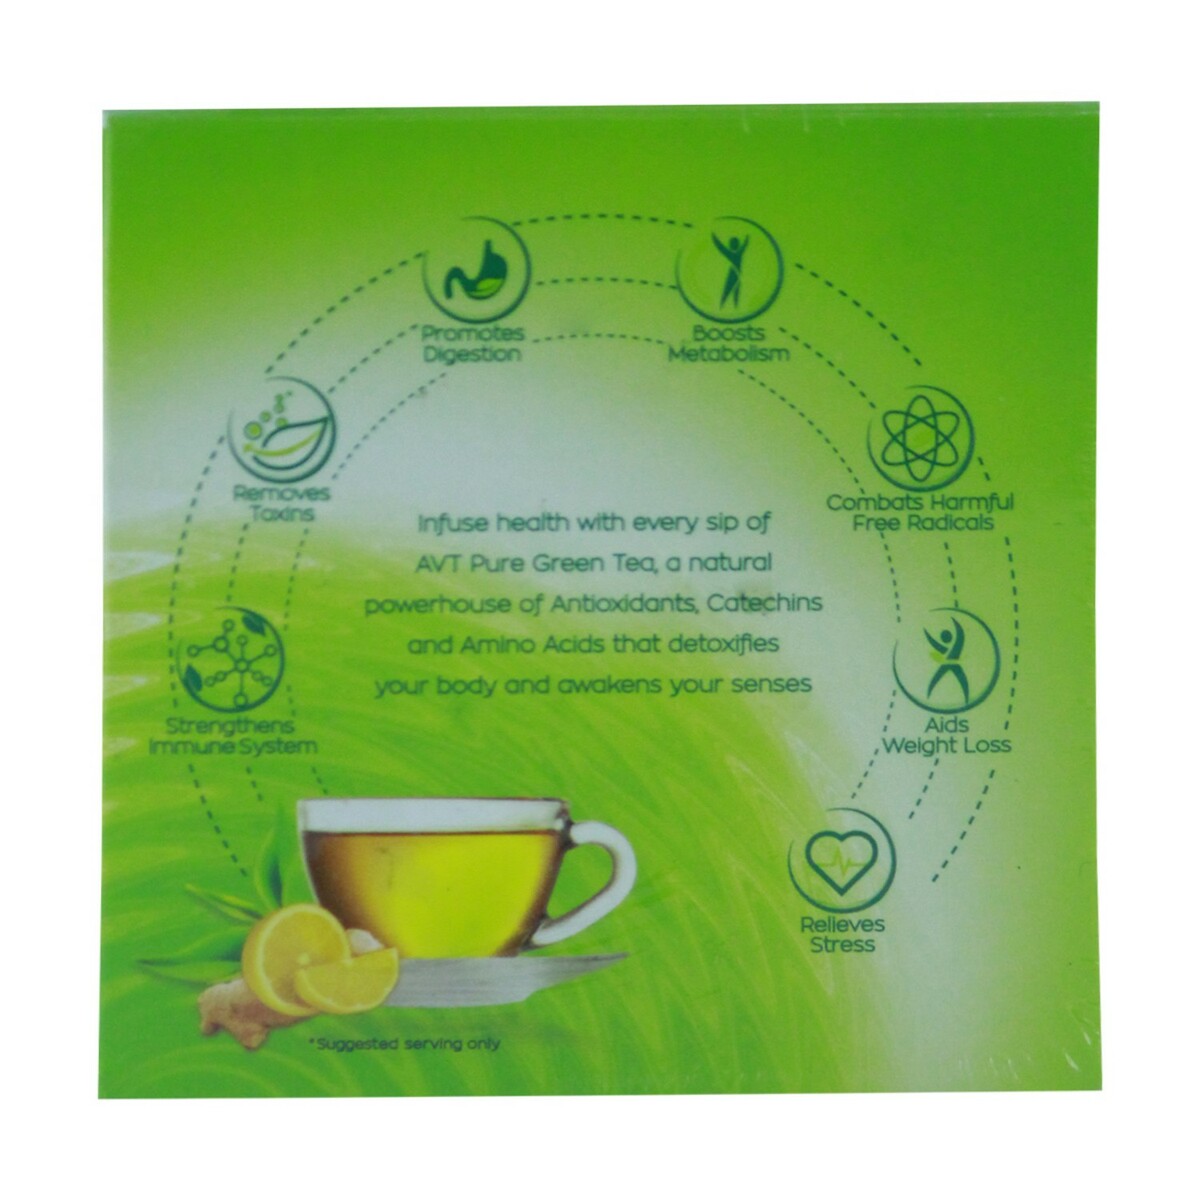 AVT Green Tea 10s Ginger Lemon